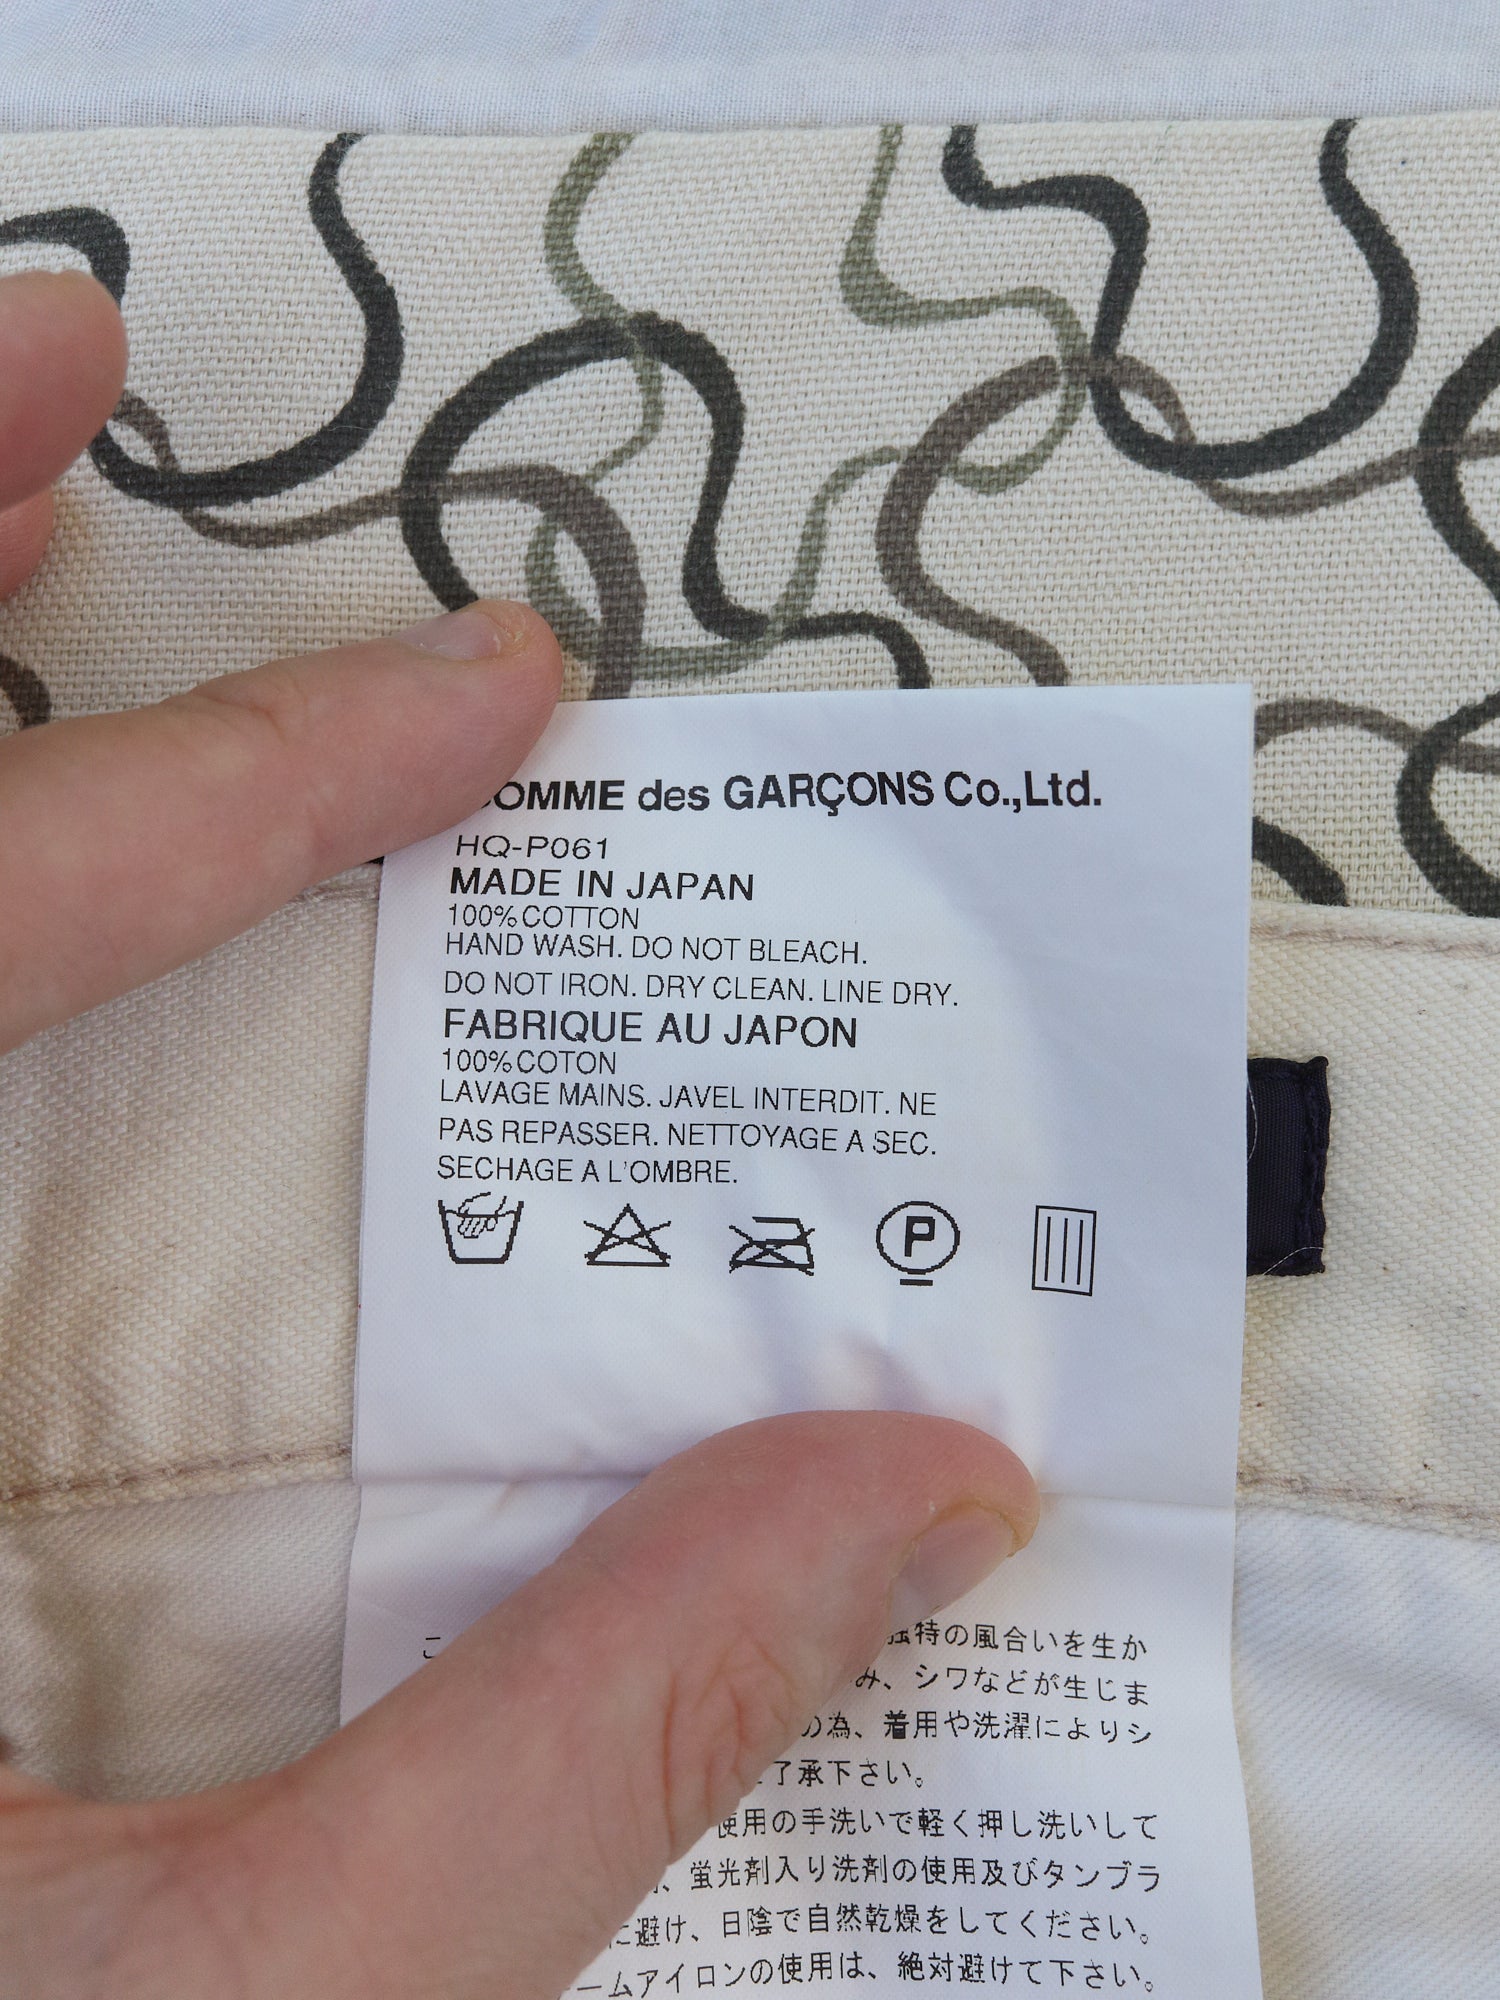 Comme des Garcons Homme 2005 oatmeal cotton 5 pocket trousers - mens L